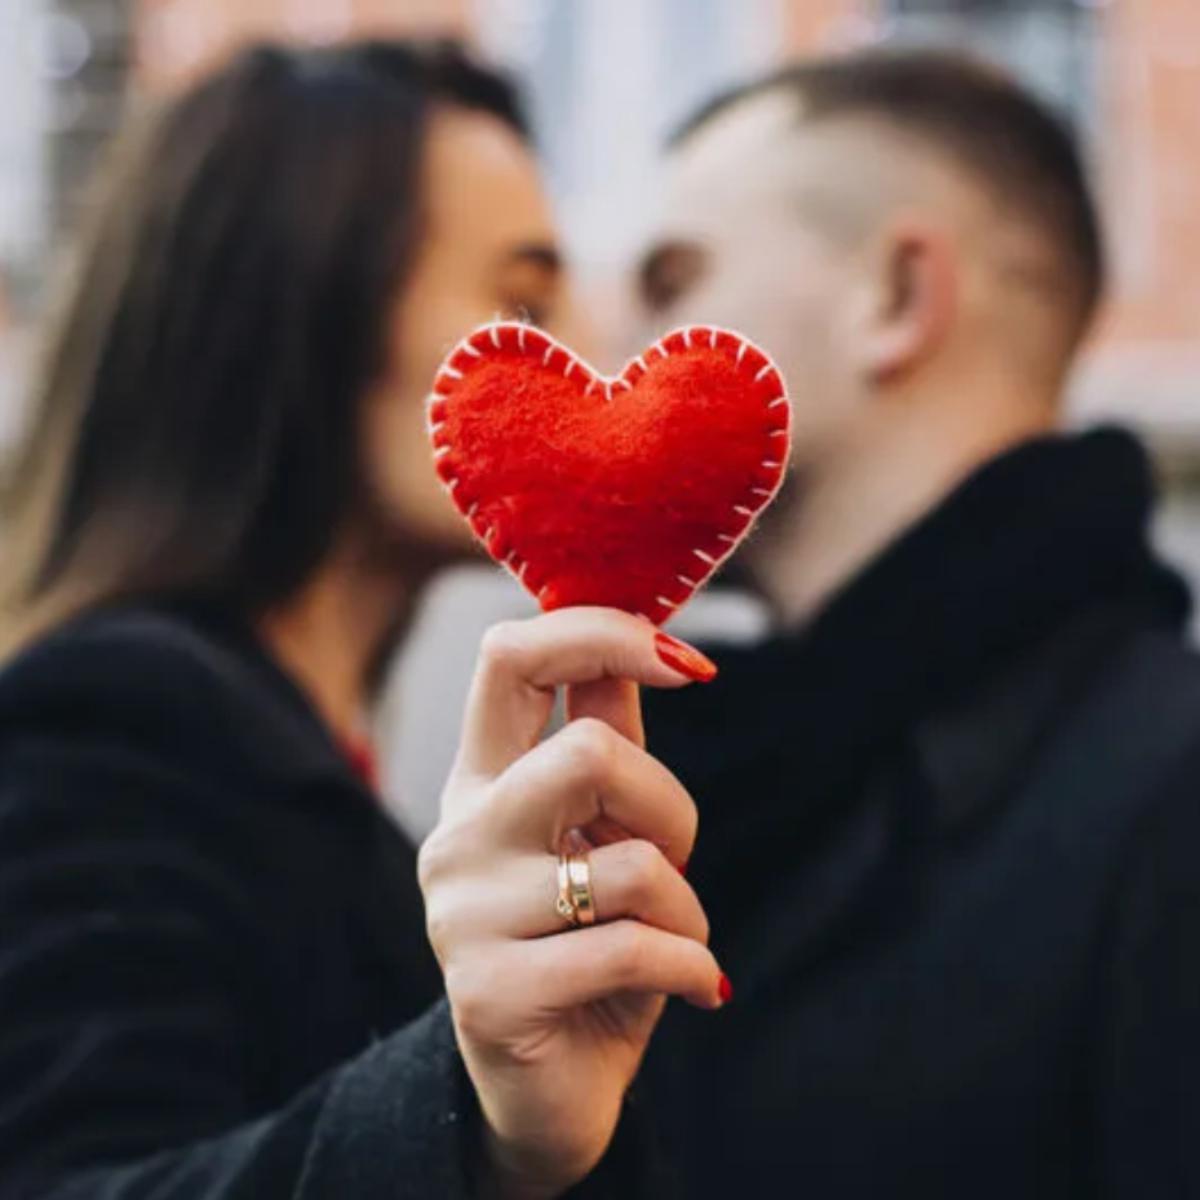 160 Frases de San Valentín muy originales y diferentes para felicitar a tu  pareja o novio por whatsapp